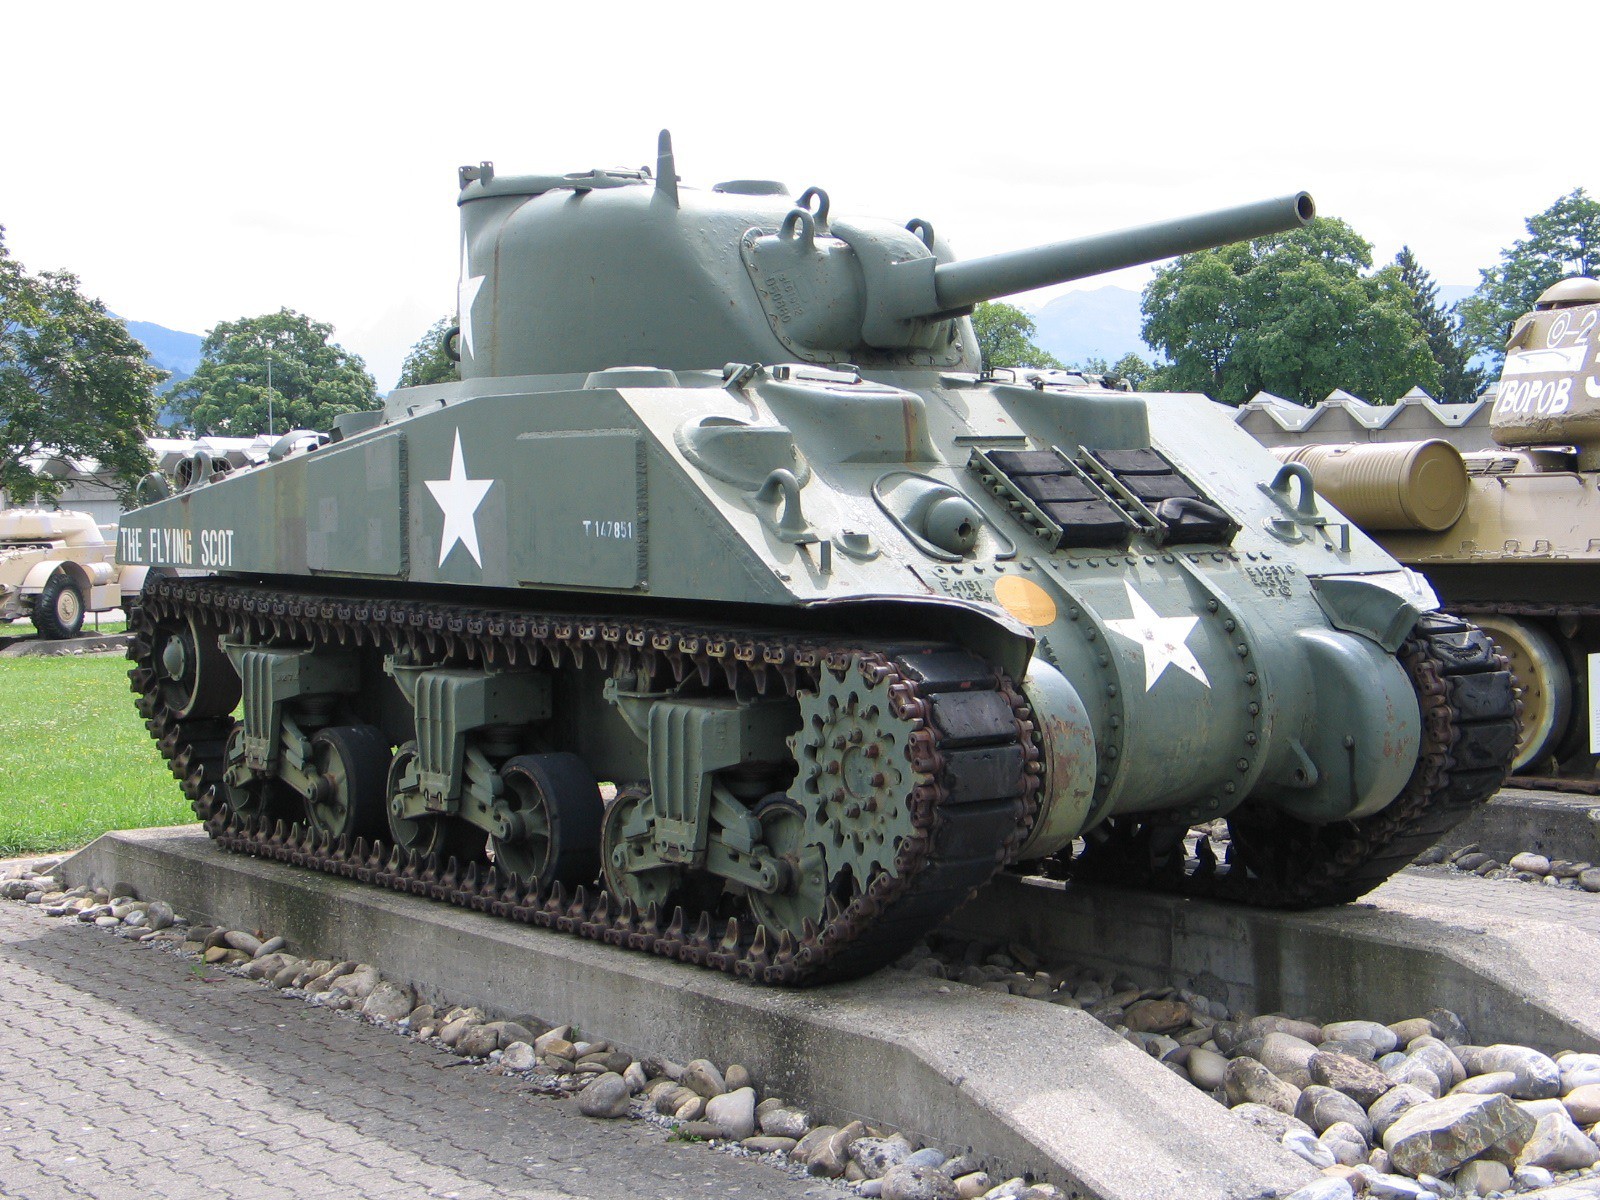 M4A4(75) Sherman